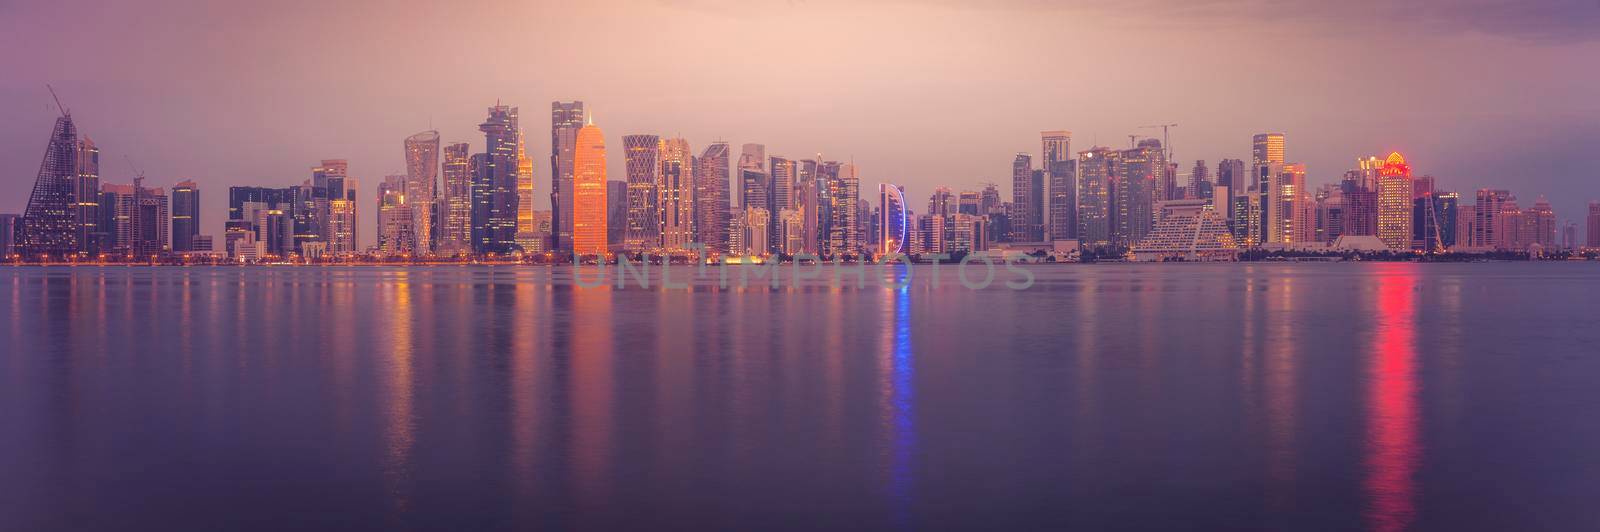 Panorama of Doha at dawn by benkrut